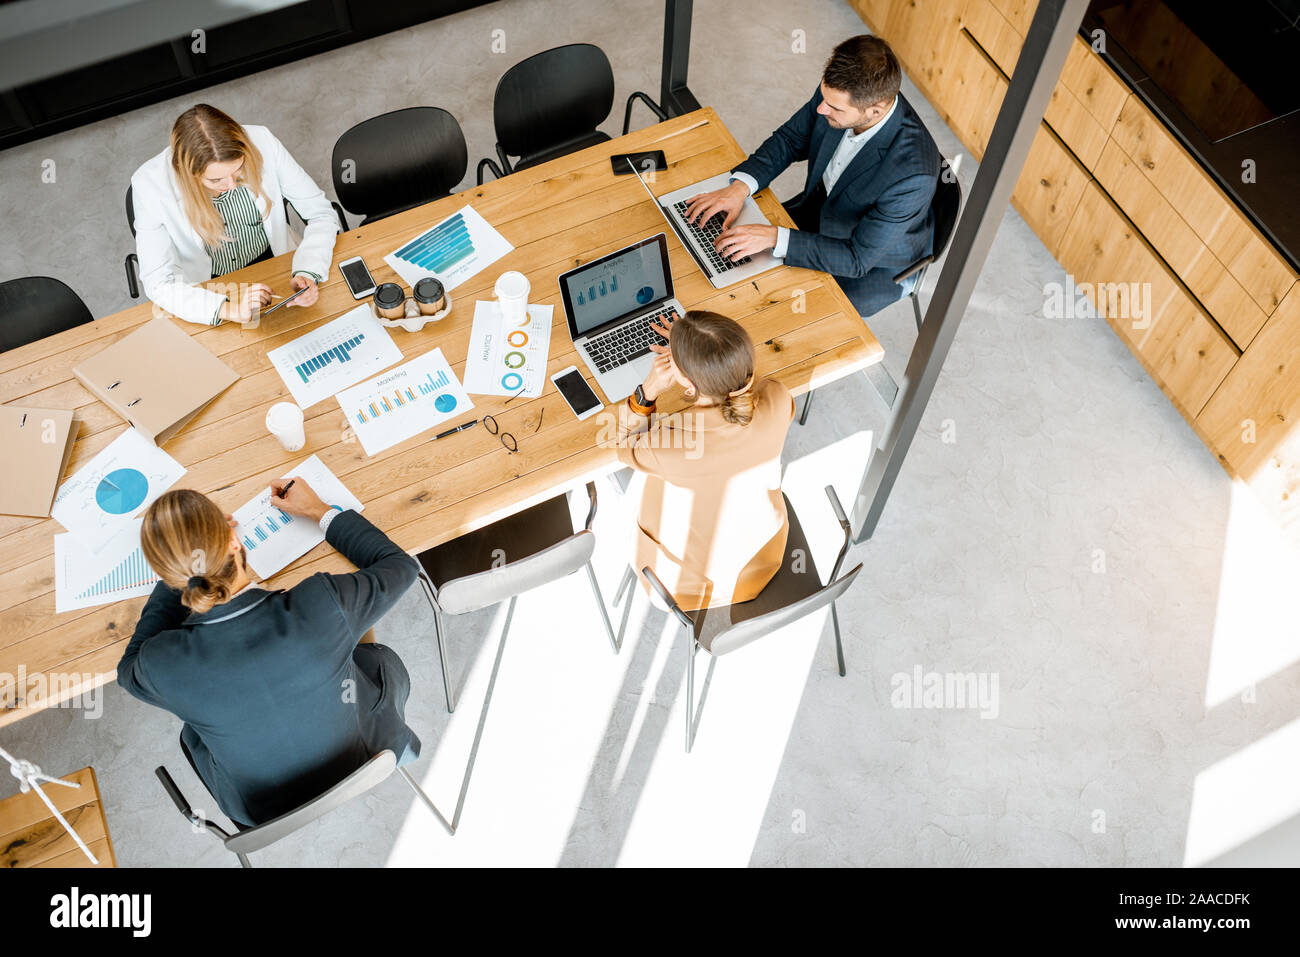 Les gens d'affaires travailler avec les ordinateurs et les statistiques au tableau en bois dans la salle de réunion, voir ci-dessus de la Banque D'Images